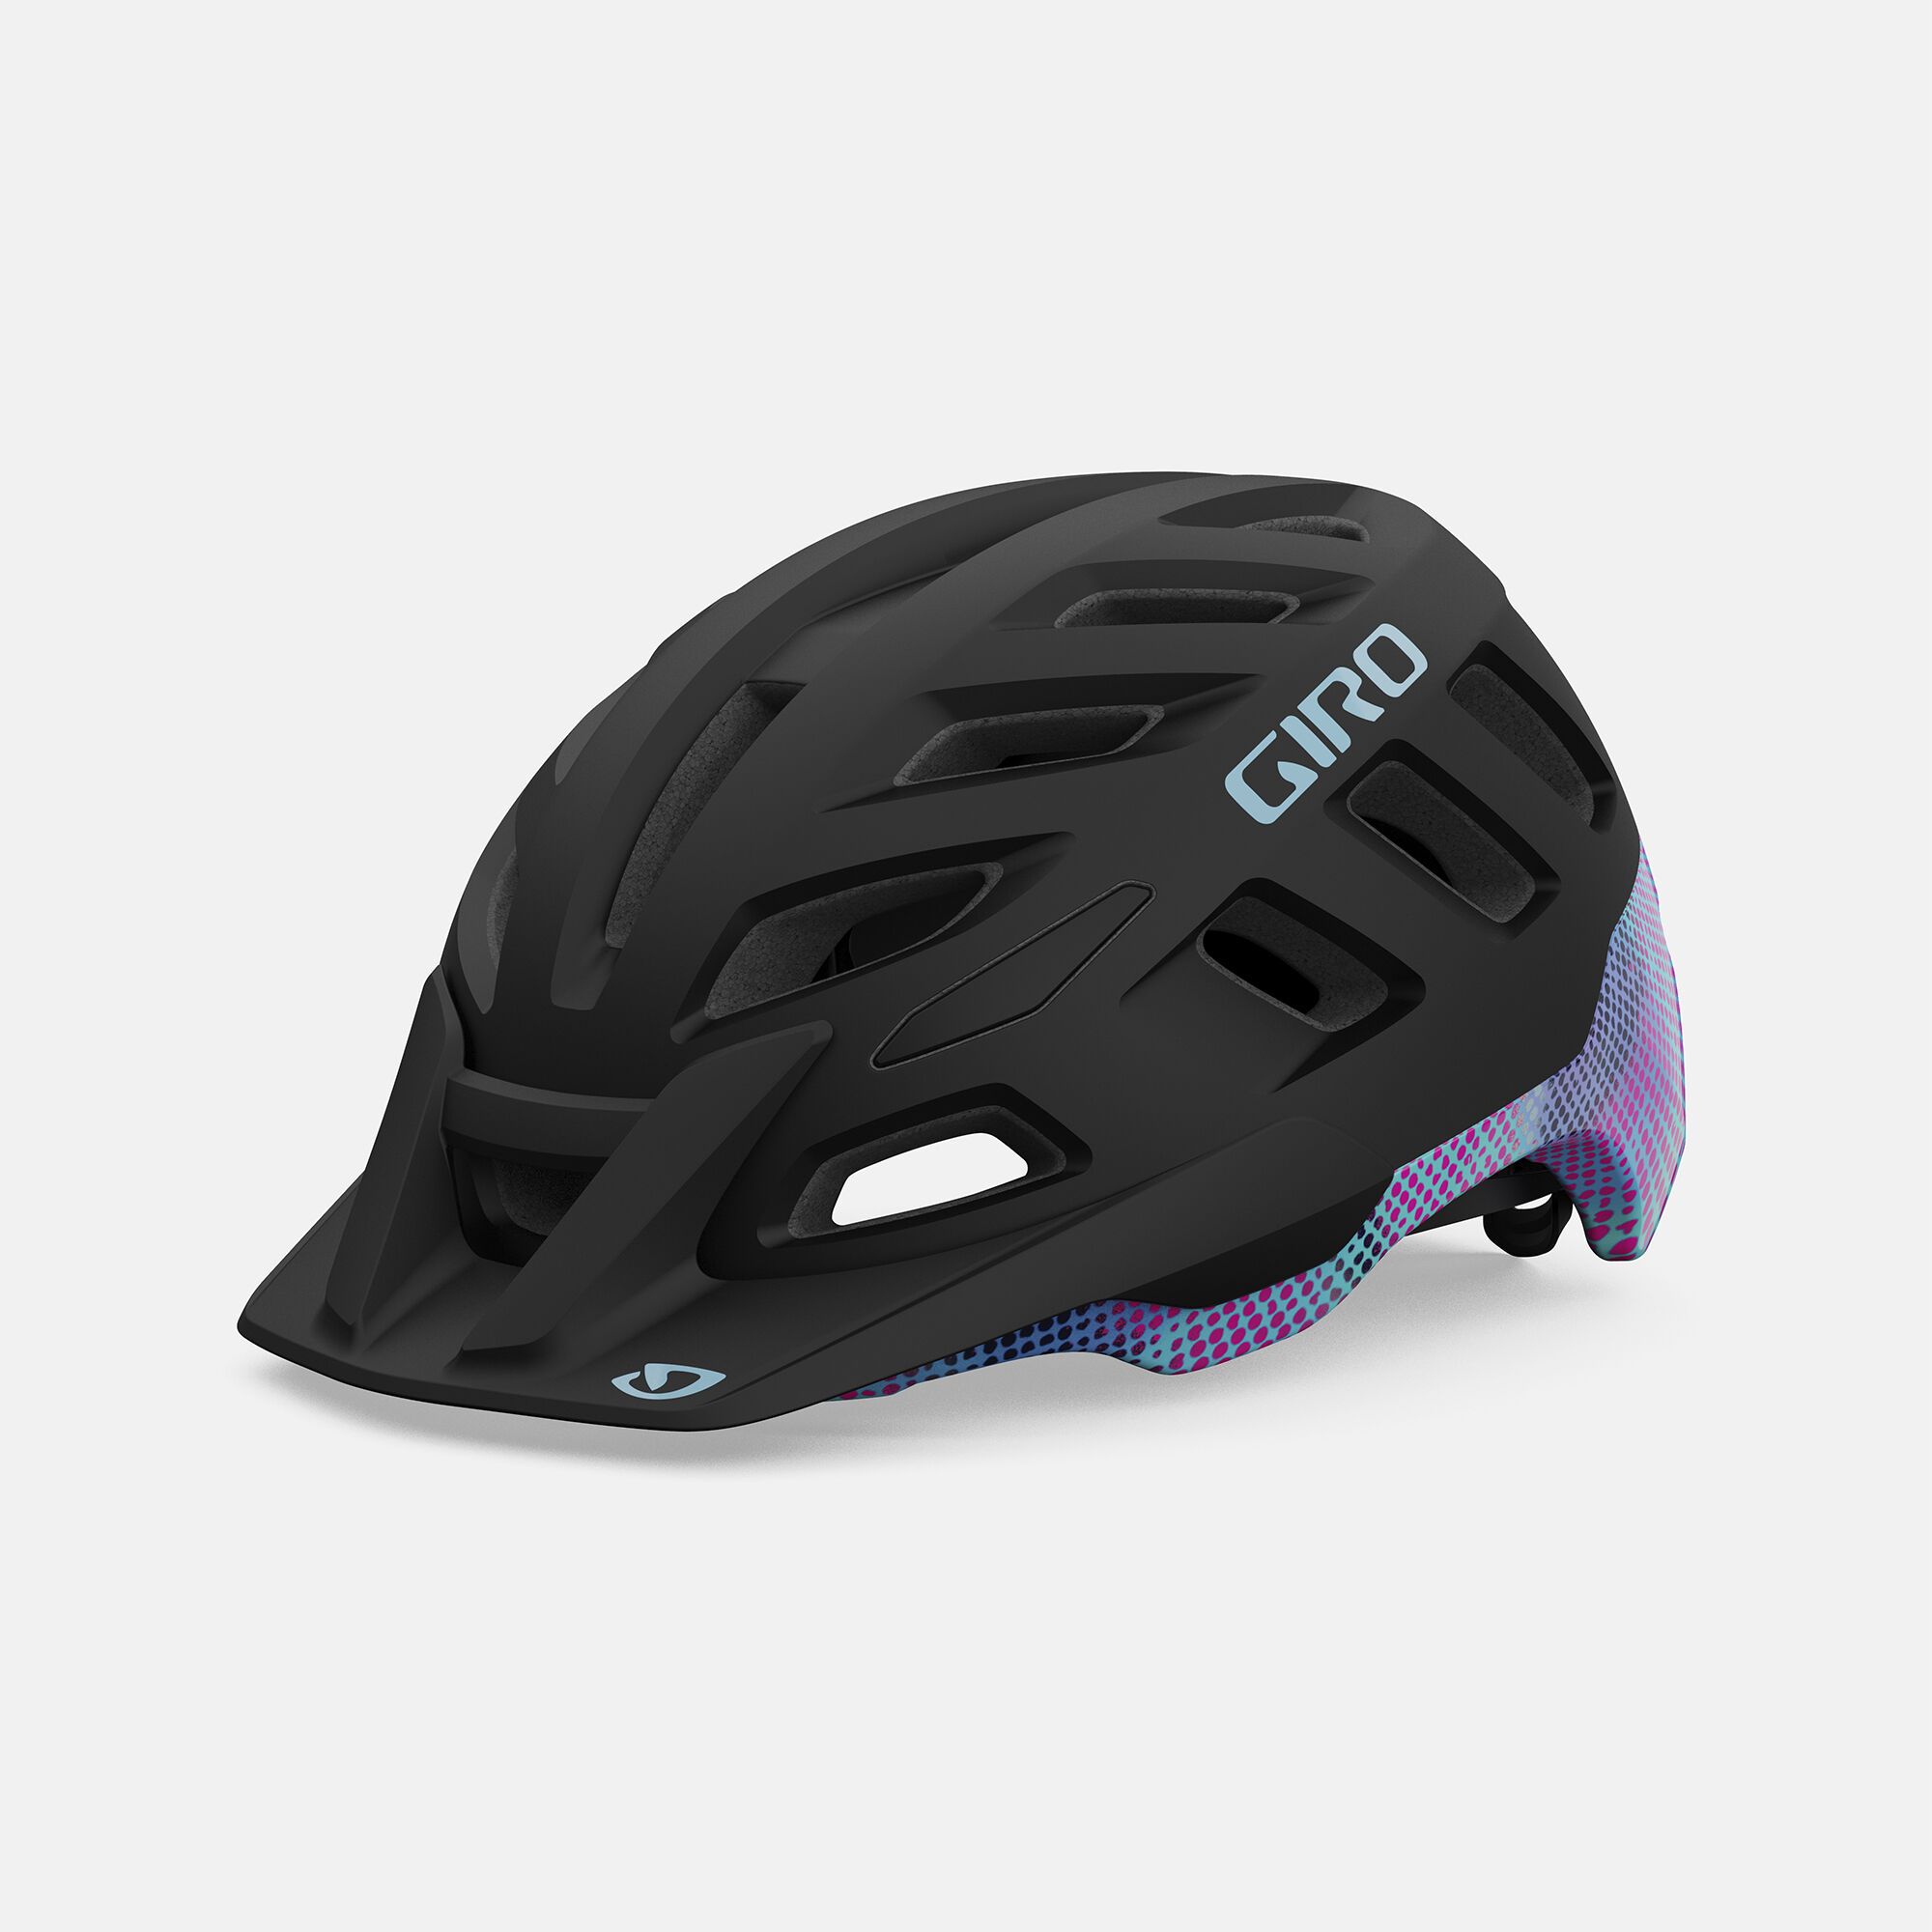 Giro Womens Petra VR Mountain Biking Shoes Size 7.5 US Black/Green New 39 EU 